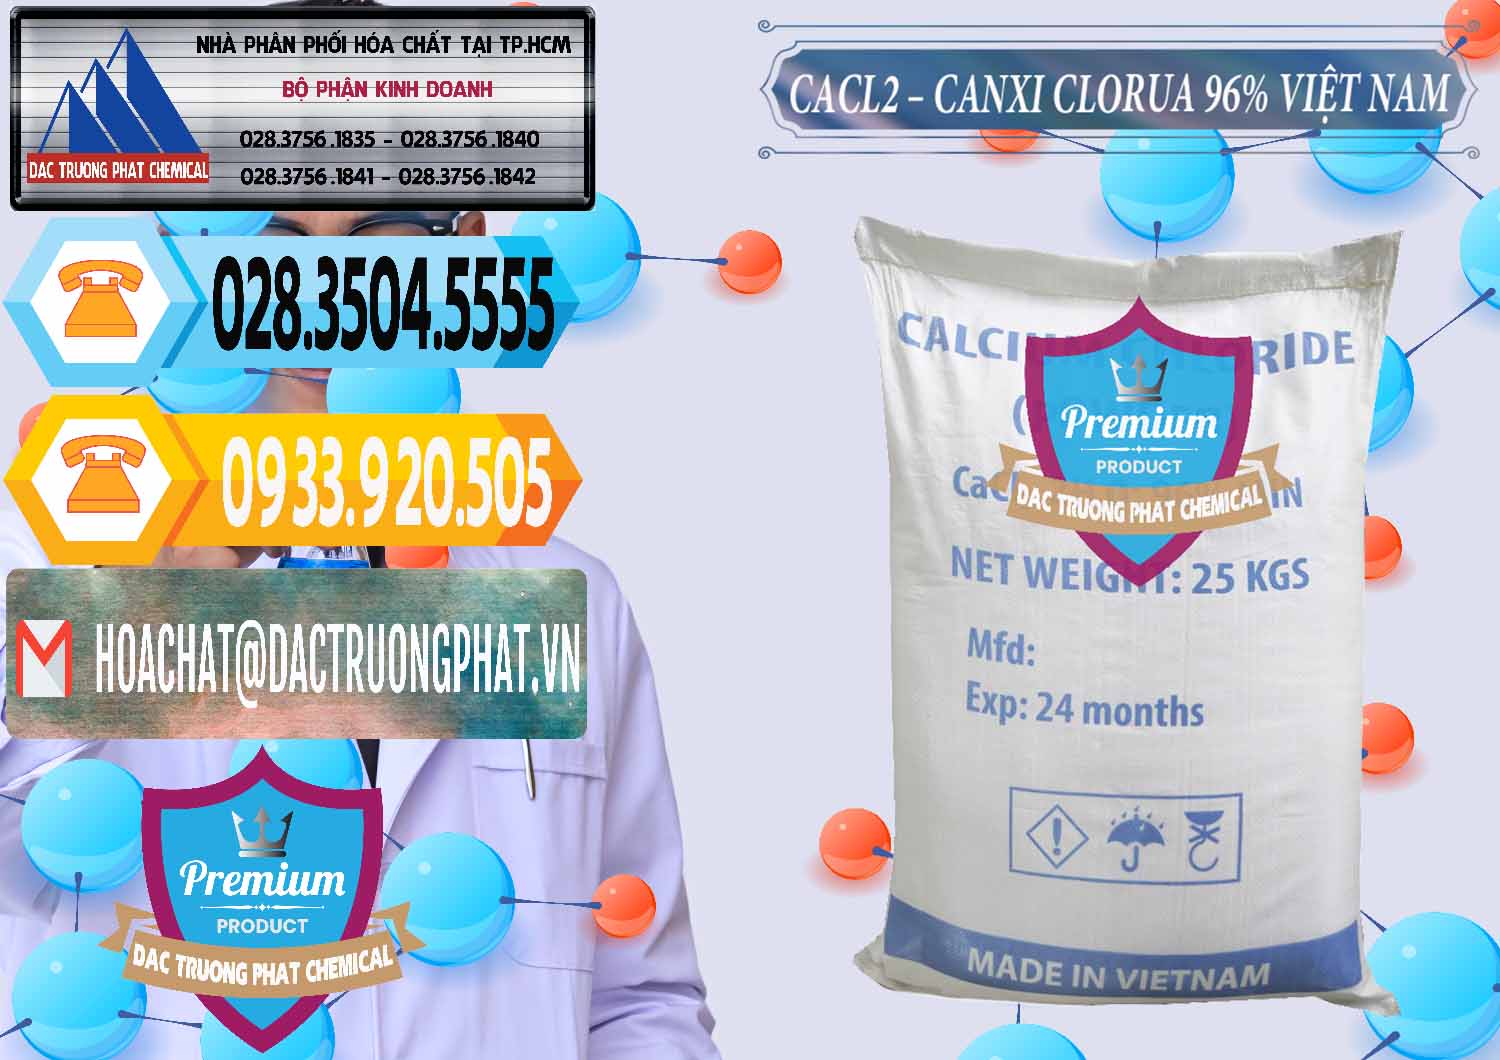 Cty chuyên phân phối và bán CaCl2 – Canxi Clorua 96% Việt Nam - 0236 - Đơn vị chuyên cung cấp - bán hóa chất tại TP.HCM - hoachattayrua.net